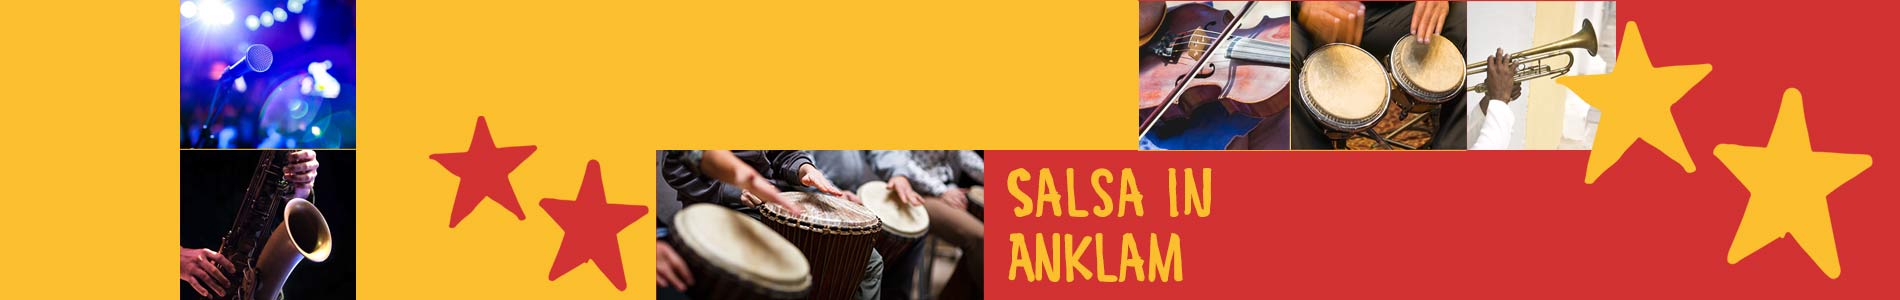 Salsa in Anklam – Salsa lernen und tanzen, Tanzkurse, Partys, Veranstaltungen